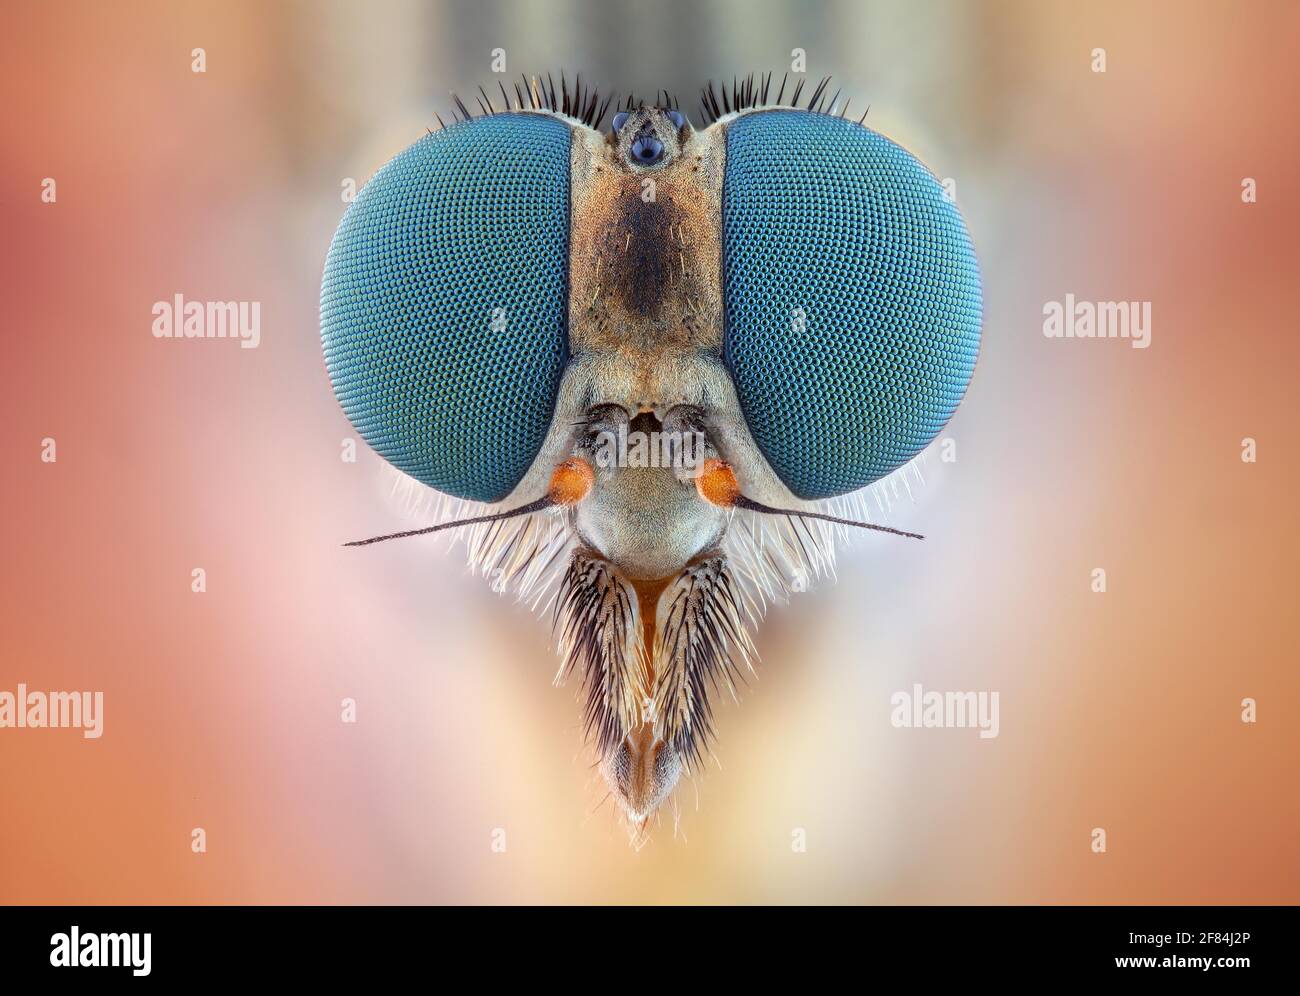 Cabeza de una mosca snipe hembra (Rhagio scolopaceus) con sus pronunciados ojos compuestos Foto de stock